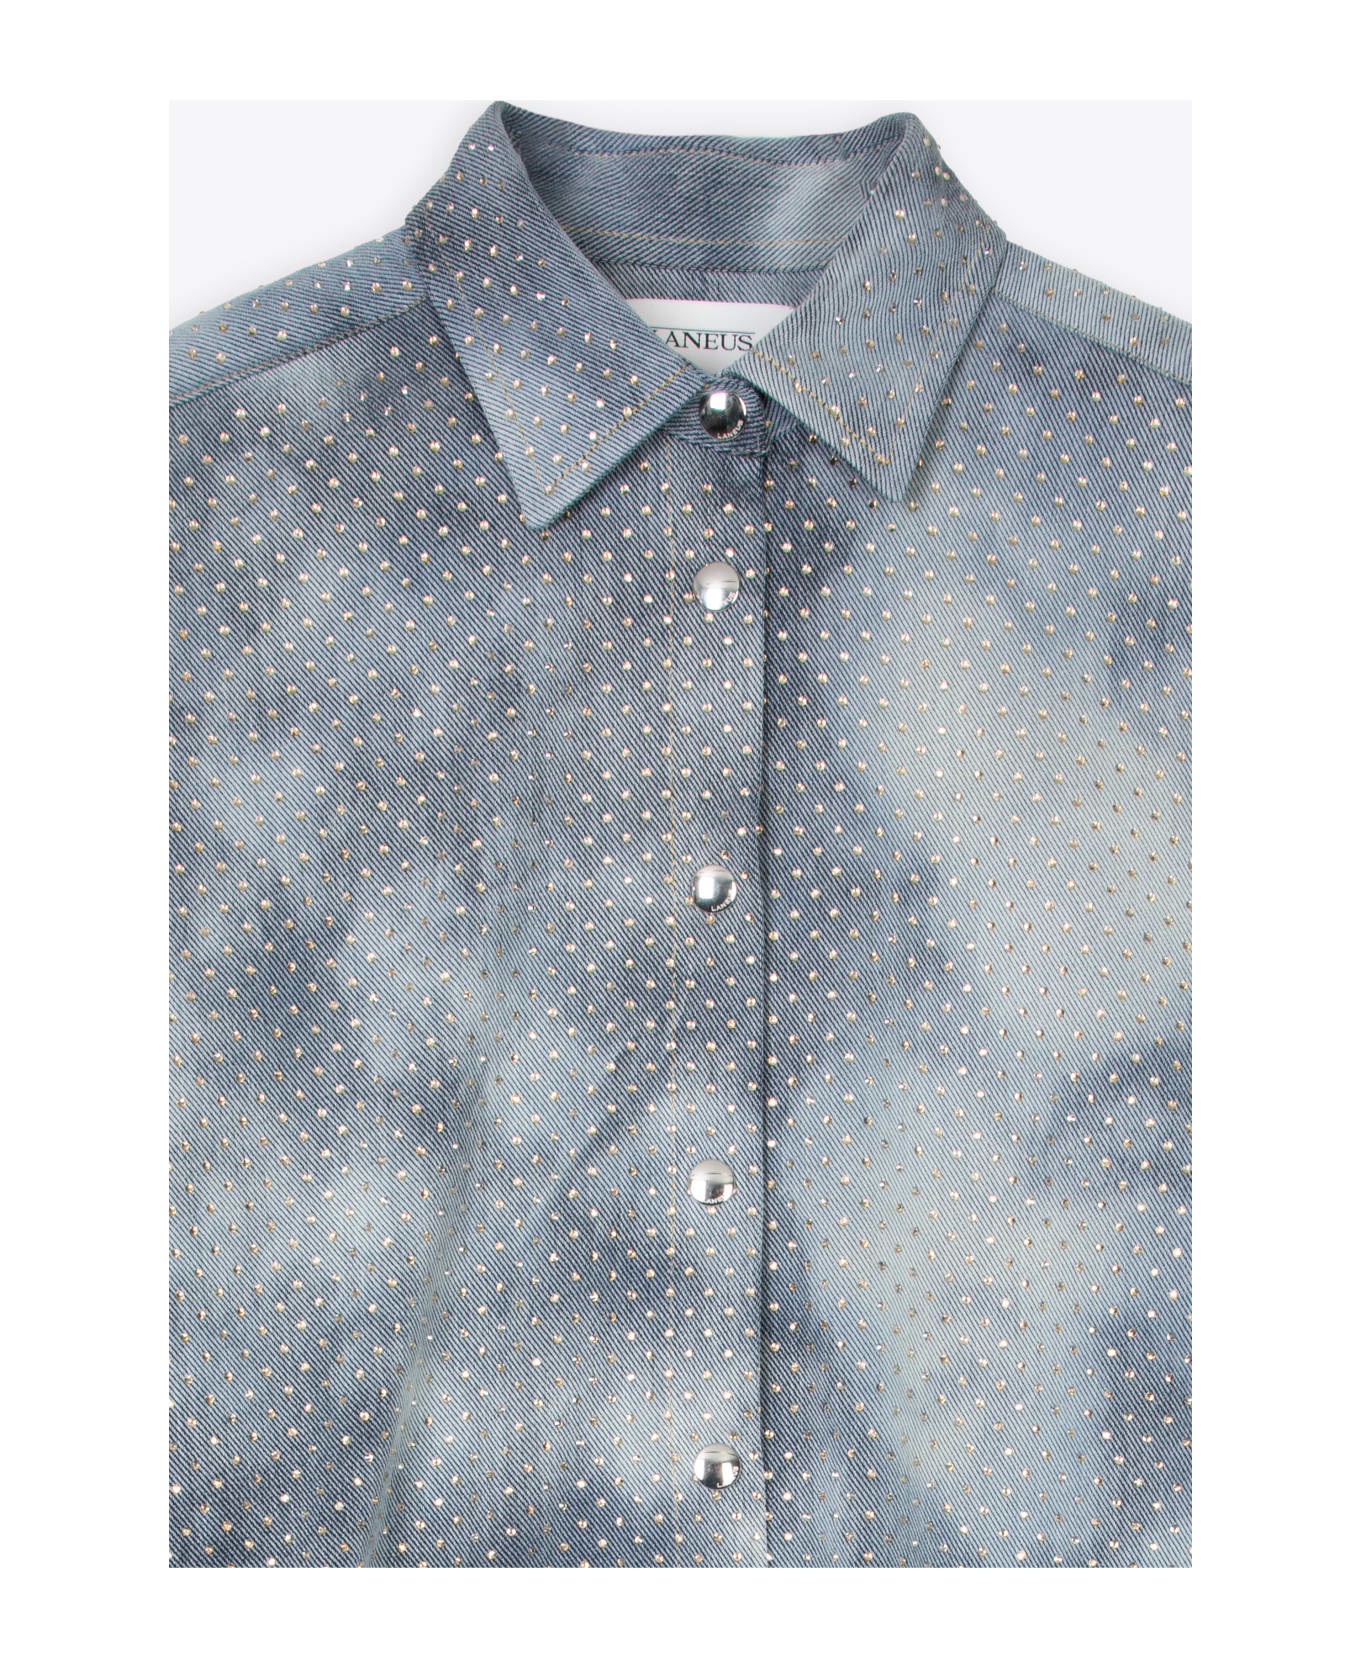 Laneus Denim Strass Shirt Woman Light Blue Denim Shirt With Crystals - Denim Strass Shirt - DENIM BLU シャツ